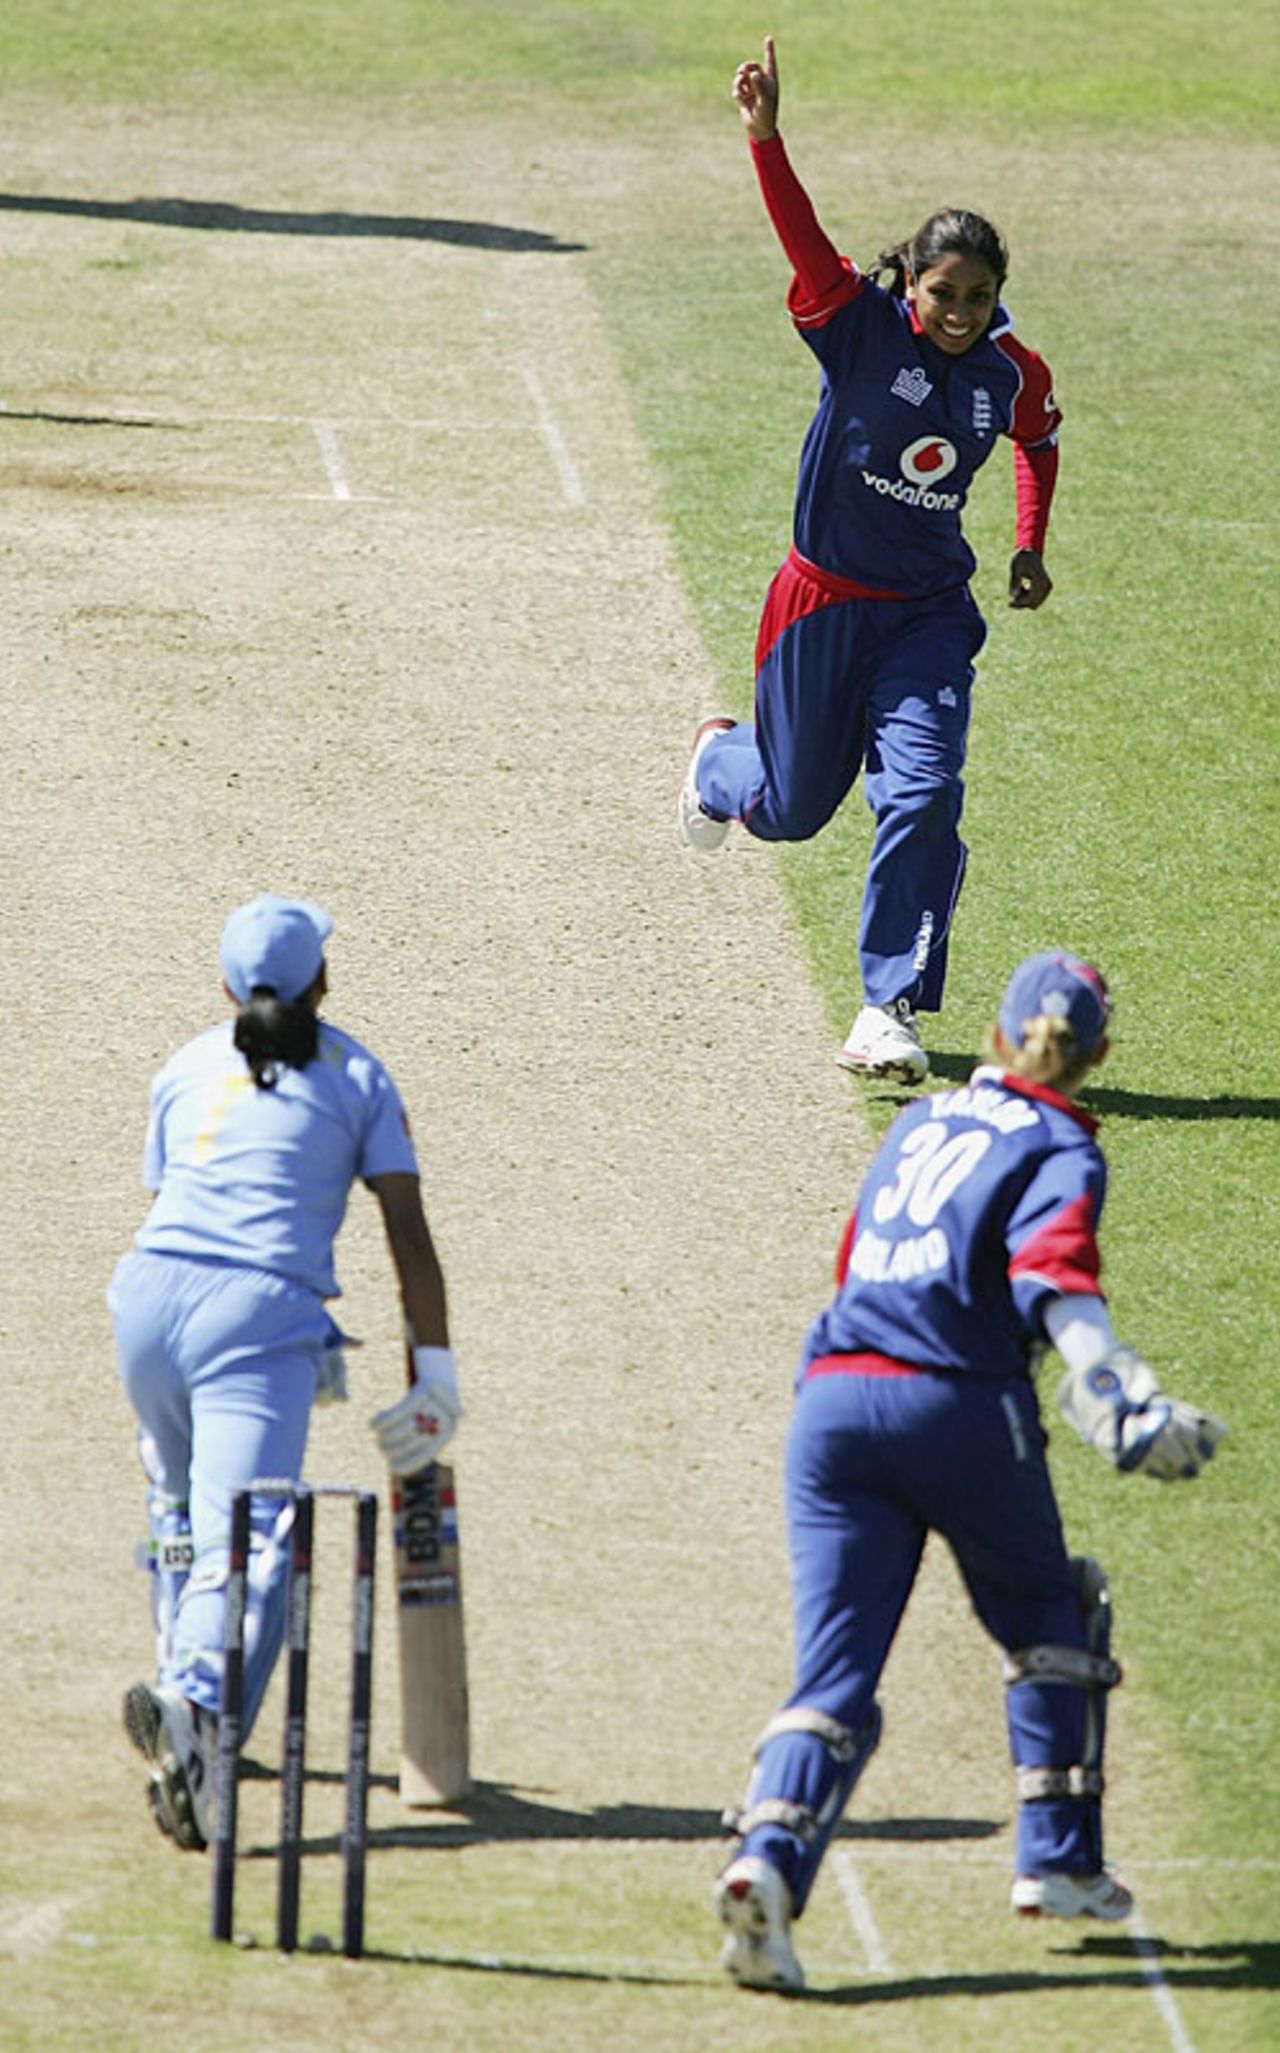 Isa Guha celebrates dismissing Reema Malhotra, England v india, 5th women's ODI, Southampton, August 25, 2006